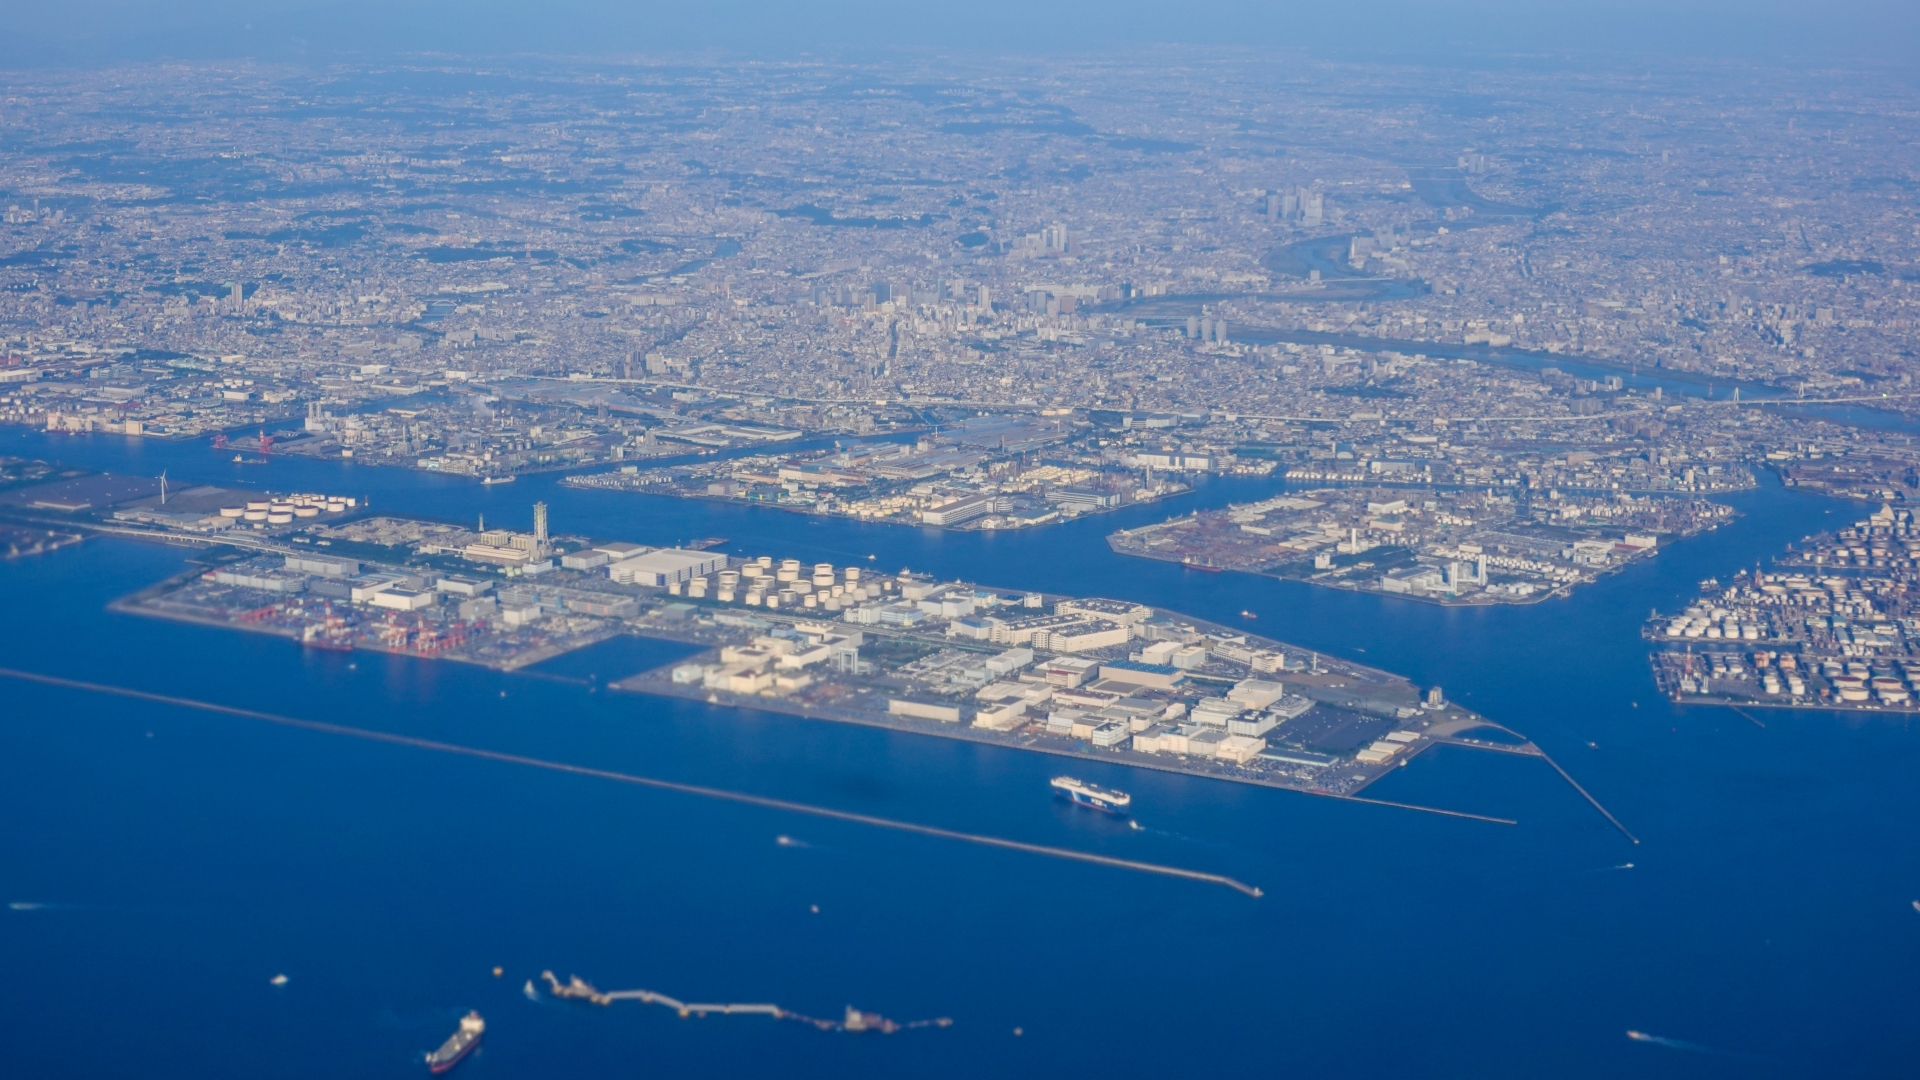 川崎区は川崎市の最も東側に位置。北は多摩川と東京都大田区、南は神奈川県横浜市鶴見区に隣接している。交通の便が良く商業・産業が集積しているエリアだ。画像は京浜工業地帯の様子。